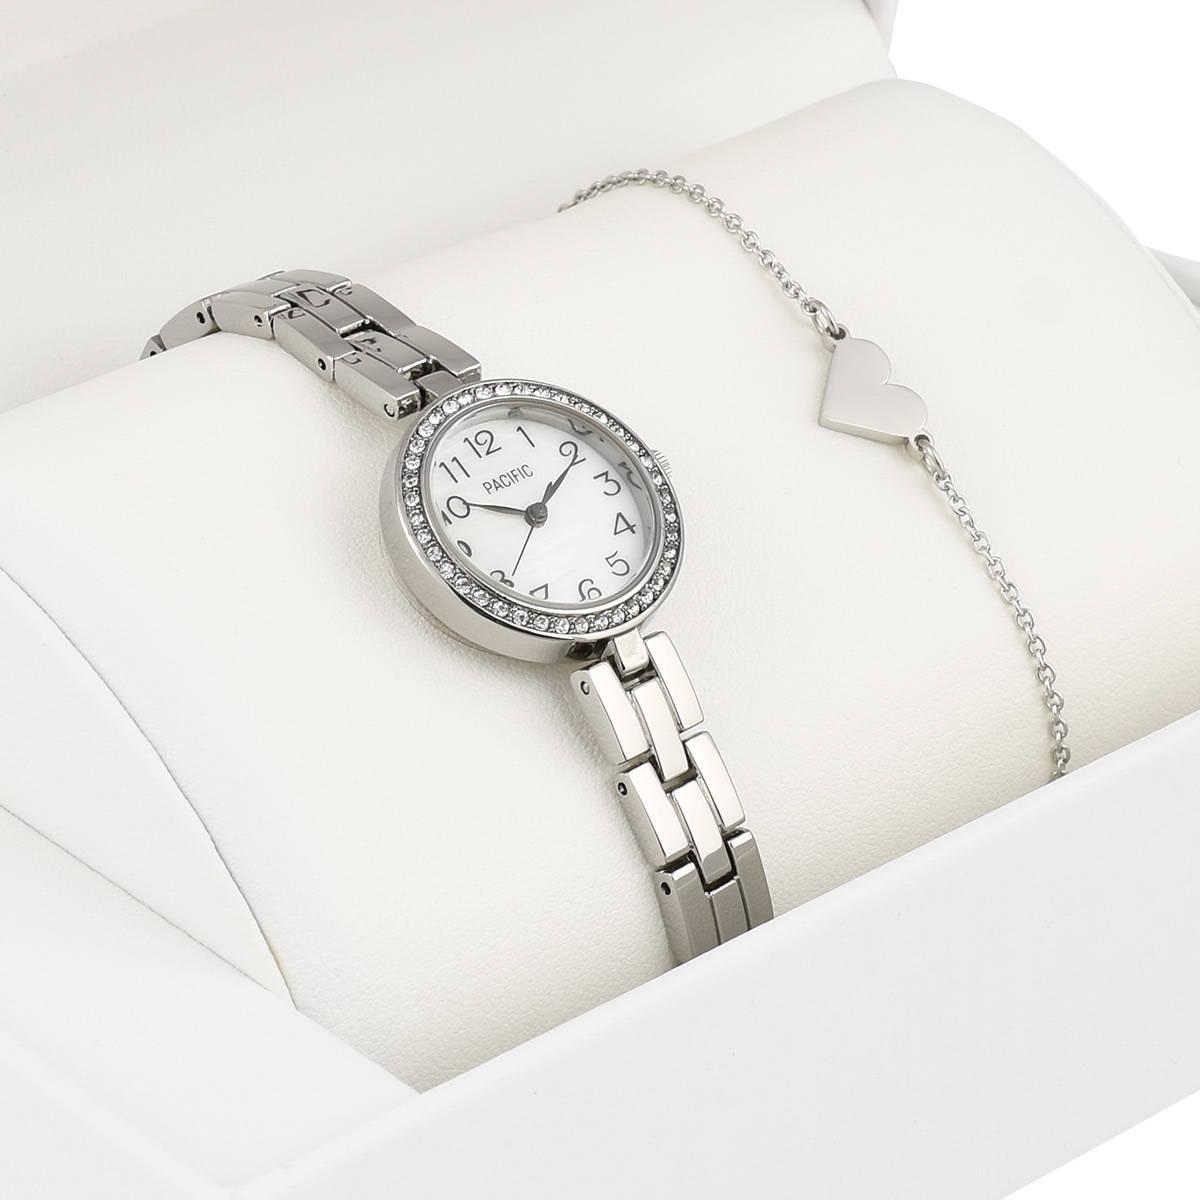 Zegarek dla dziecka zestaw prezentowy X6128-2 srebrny